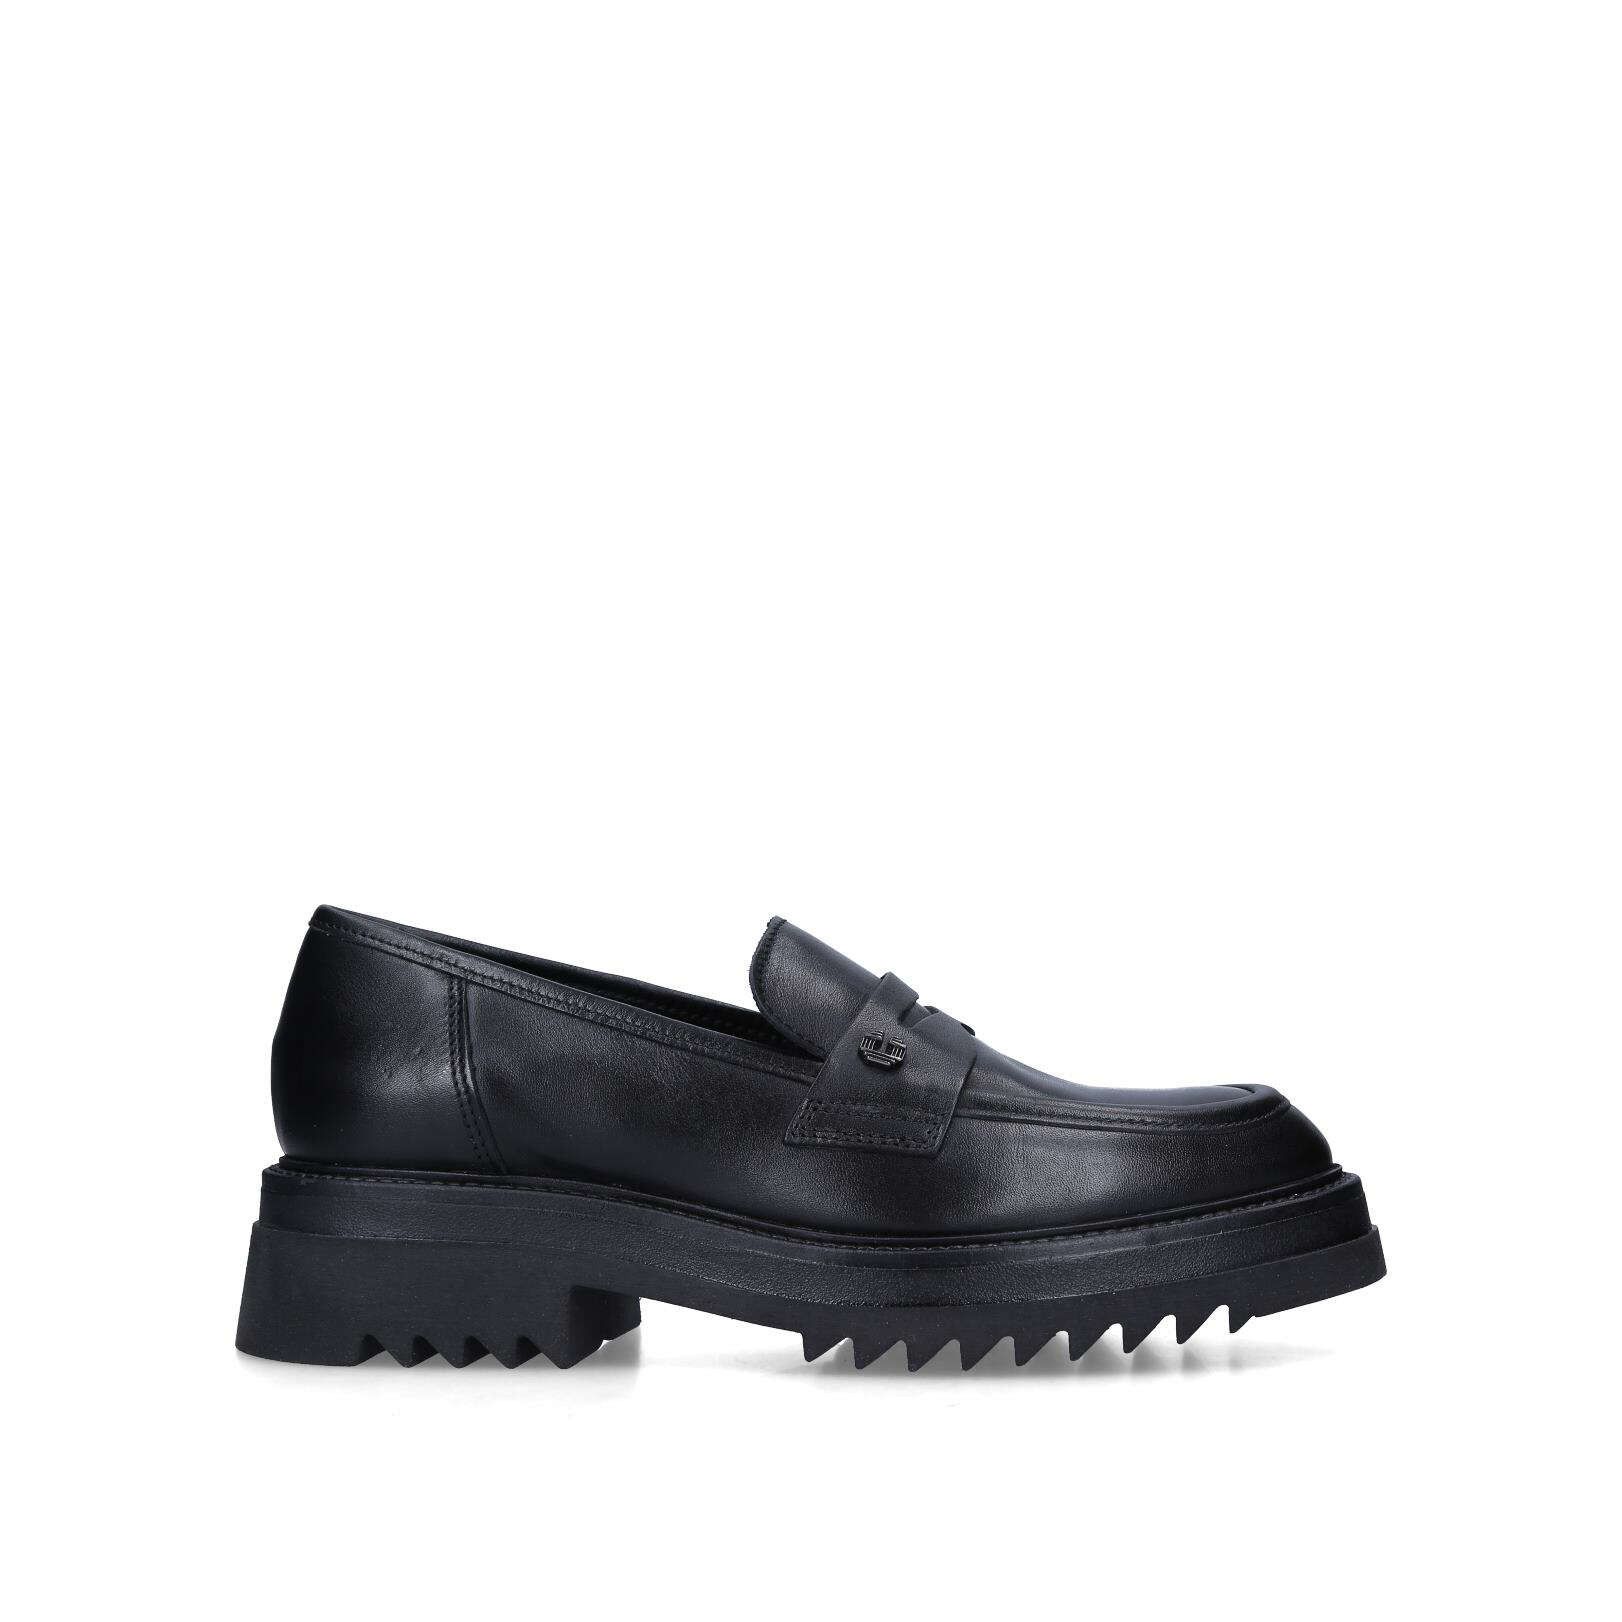 STRONG LOAFER Black Leather Slip On Loafers by CARVELA | Kurt Geiger (Global)